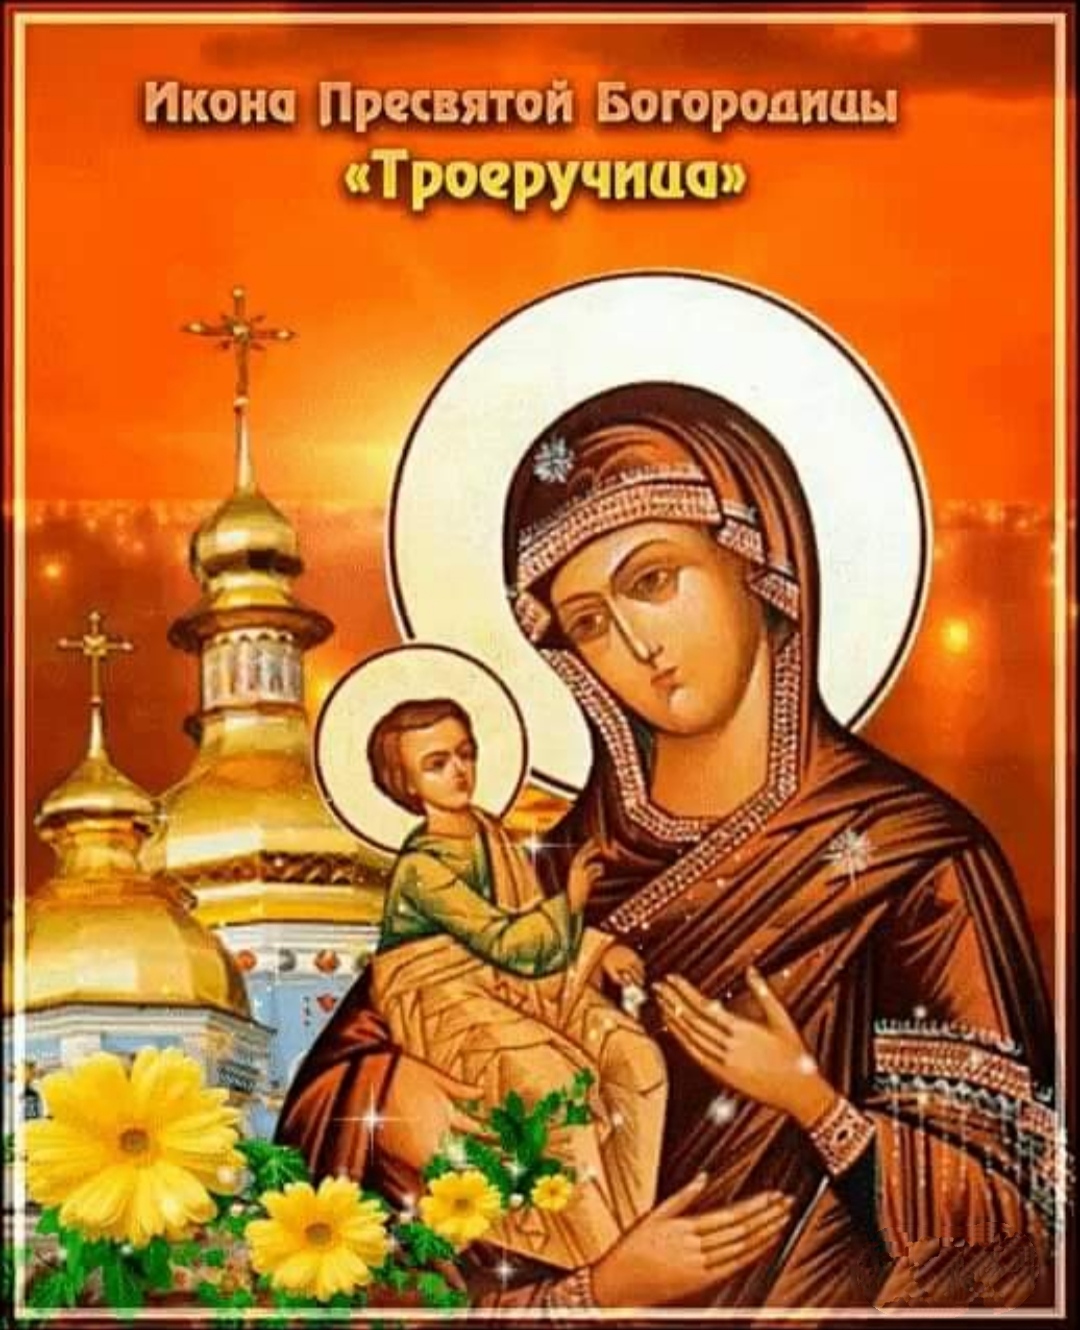 11 и 25 июля - Празднование в честь иконы Божией Матери "Троеручица": что можно и что нельзя делать, как и о чем молиться иконе "Троеручица"?